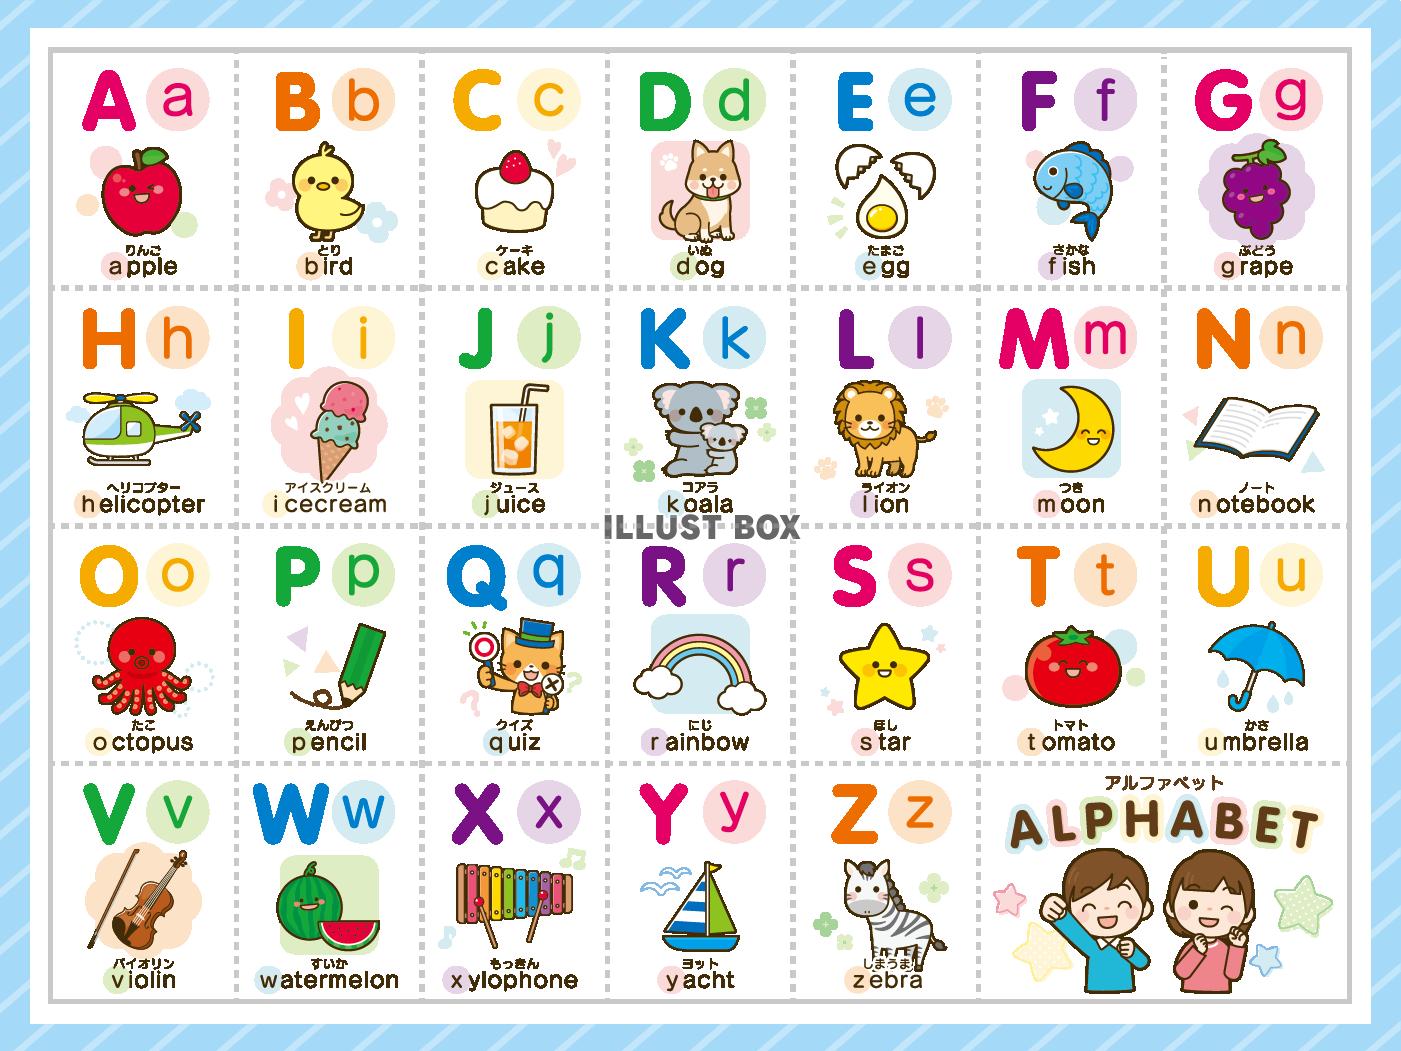 イラストボックス アルファベット表・ABC表